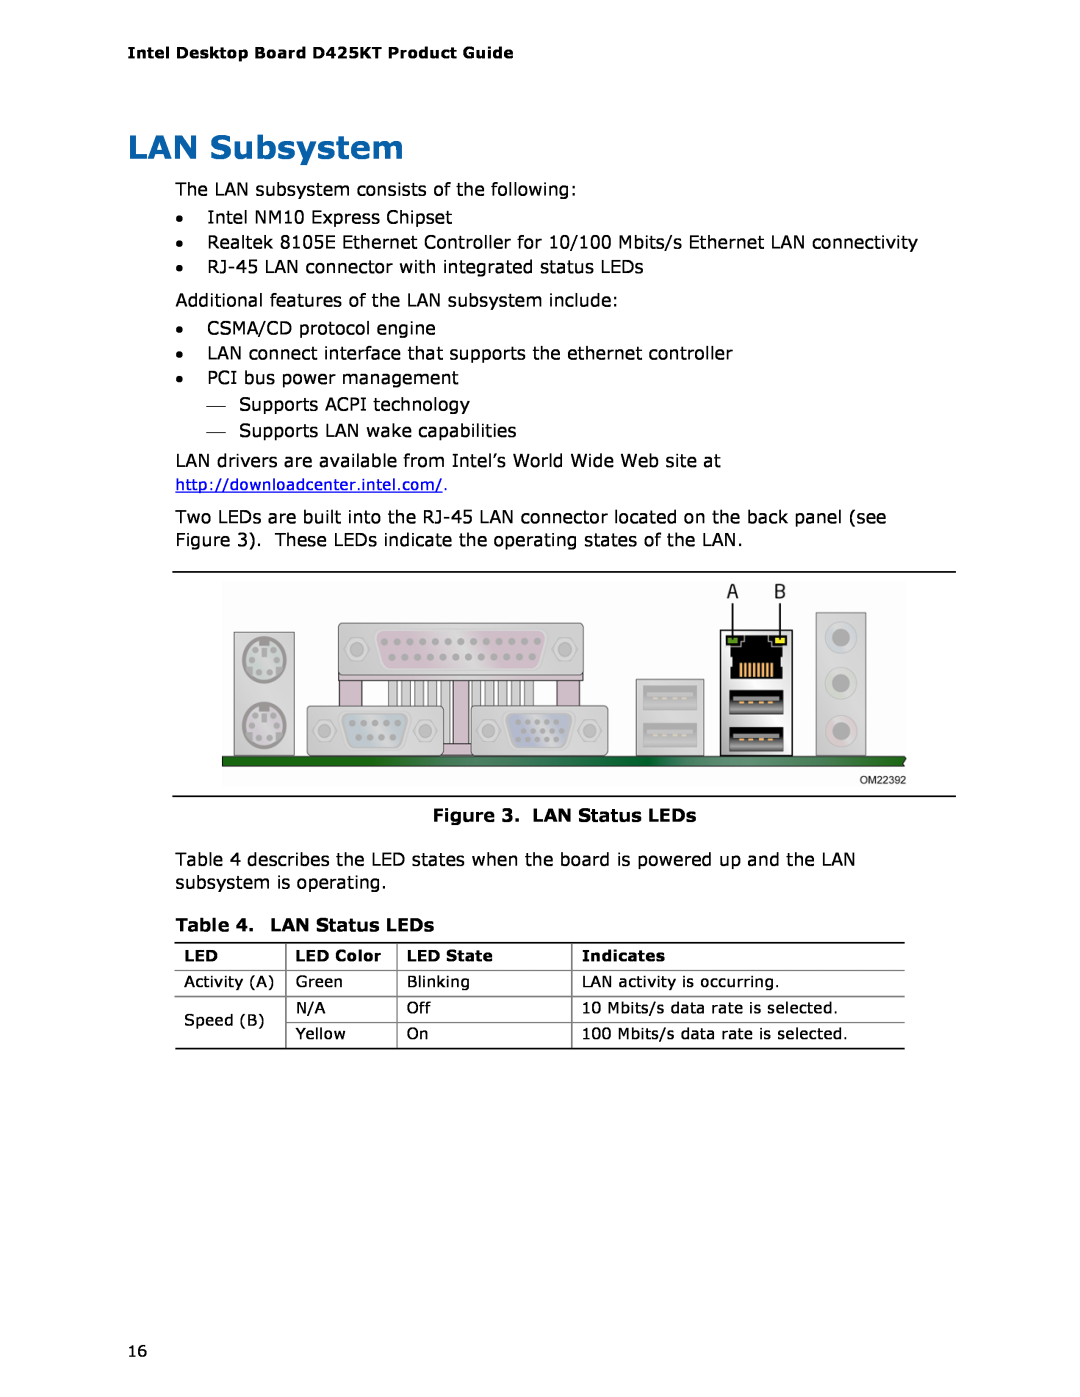 Intel D425KT manual LAN Subsystem, LAN Status LEDs 